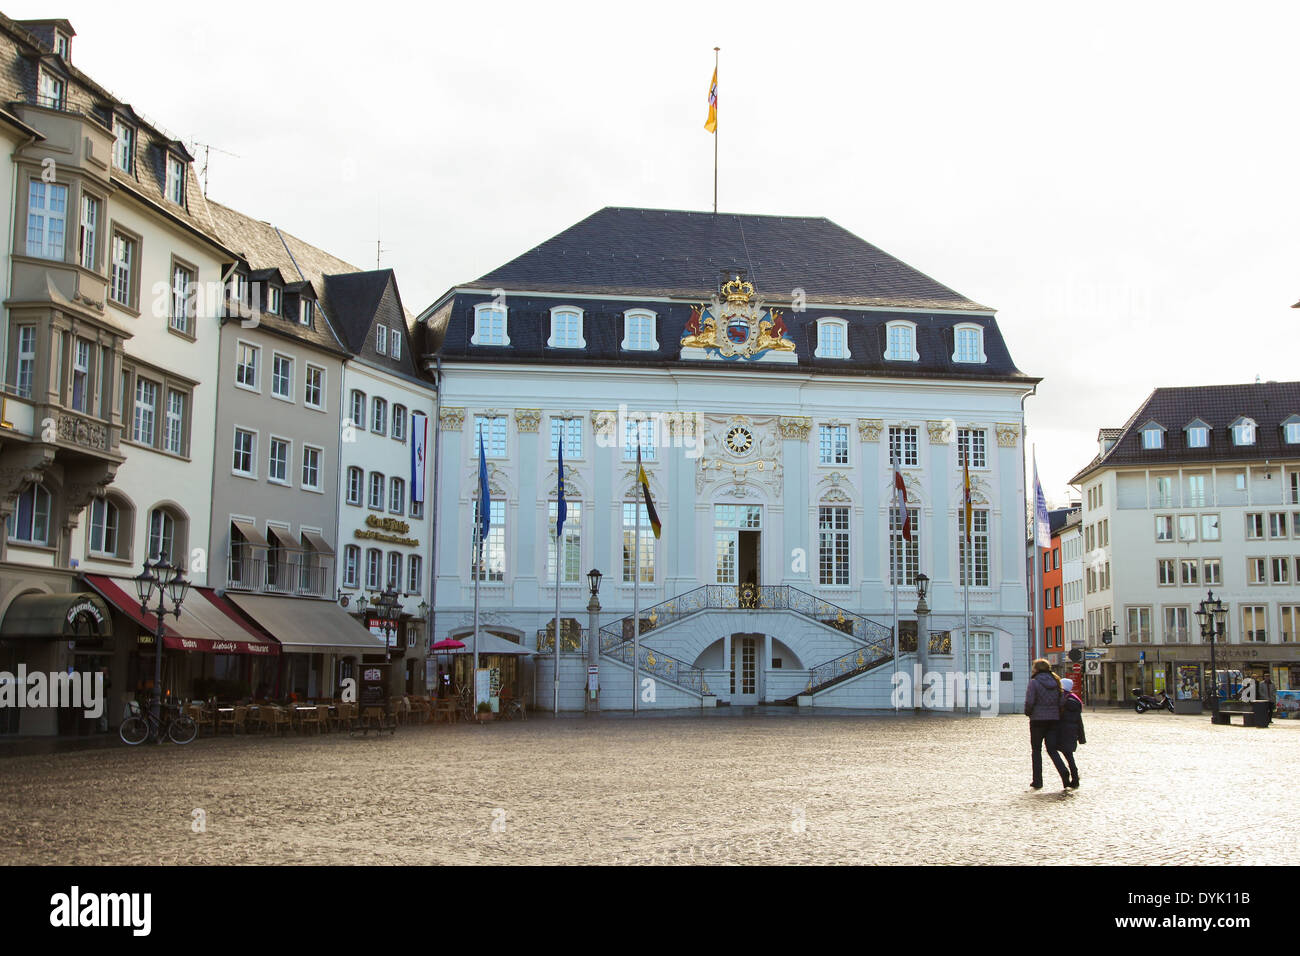 BONN, Germania - 16 febbraio 2014: persone non identificate hanno di fronte al Vecchio Municipio di Bonn, Renania settentrionale-Vestfalia (Germania). Foto Stock